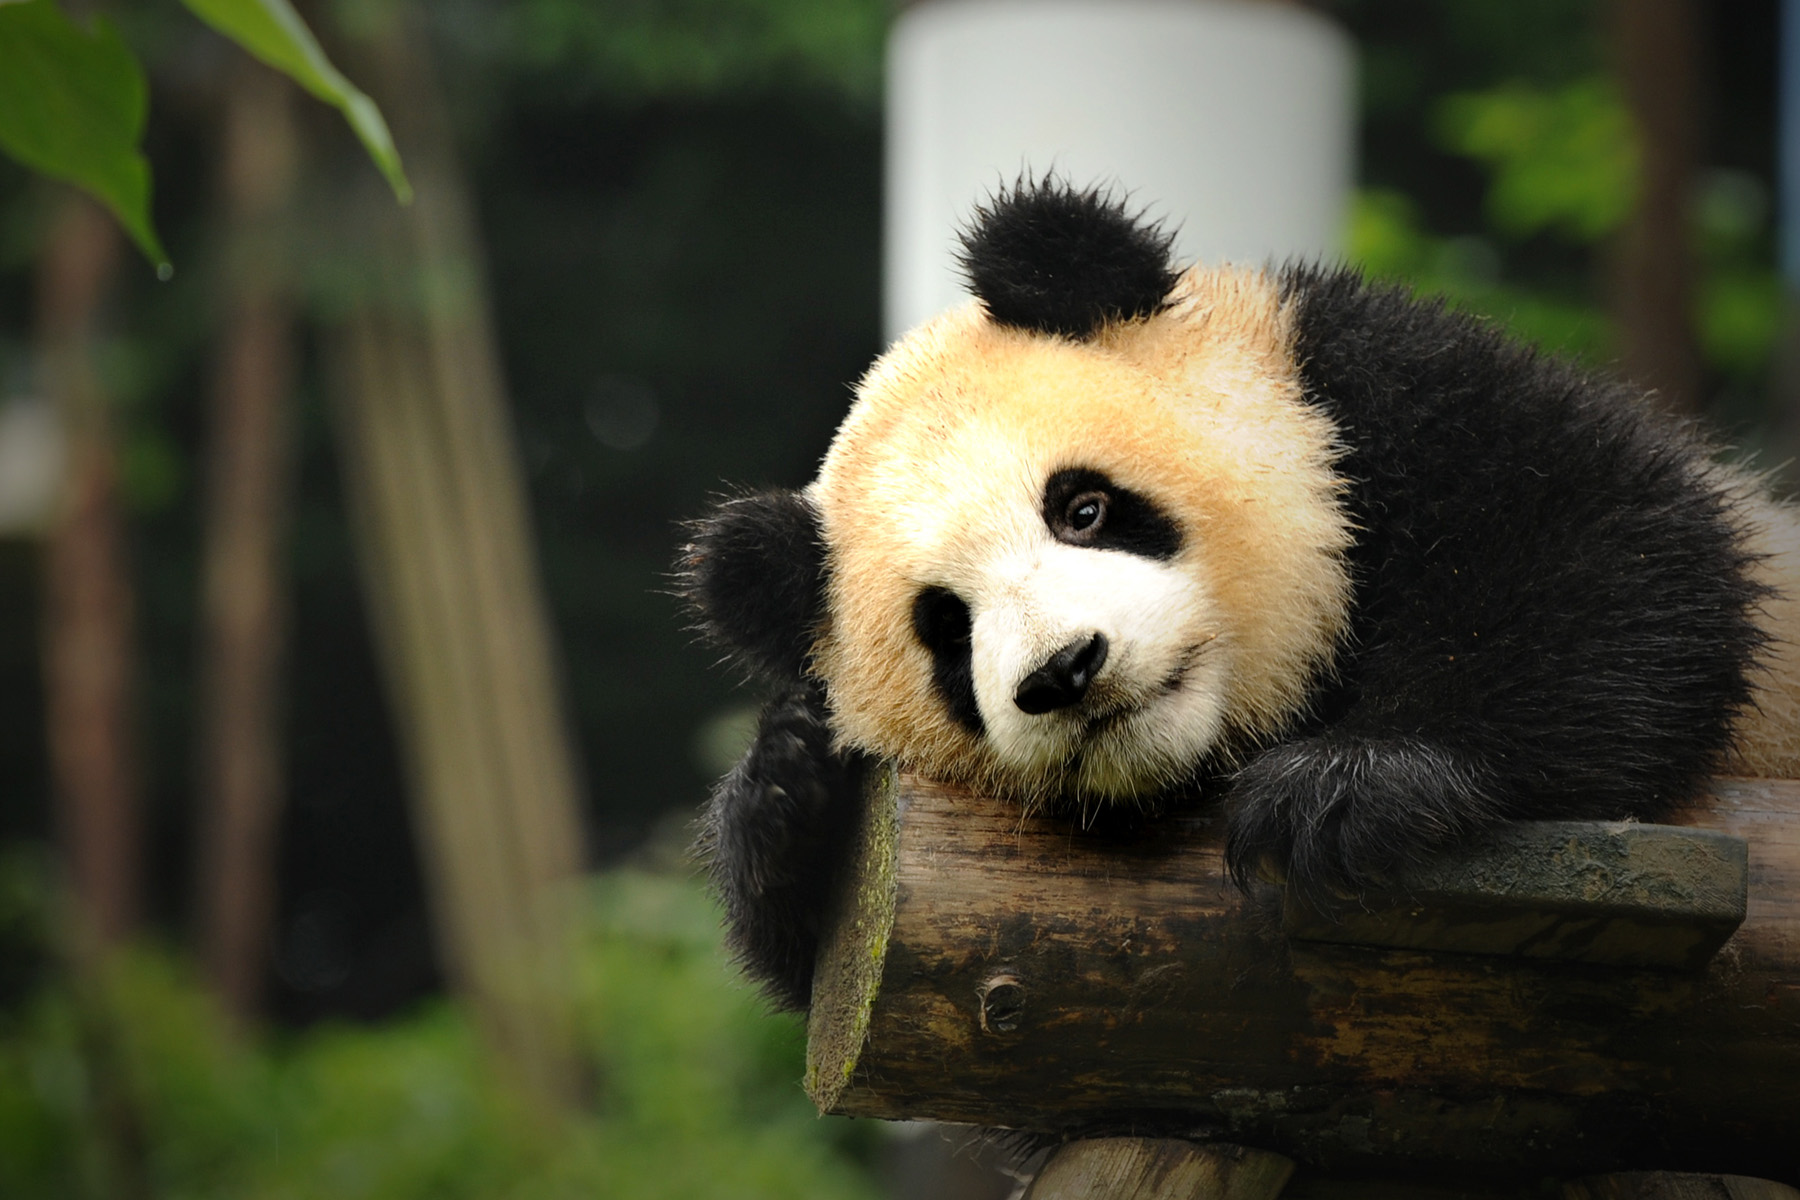 Bifengxia Panda Base Travel Guide, Things to do